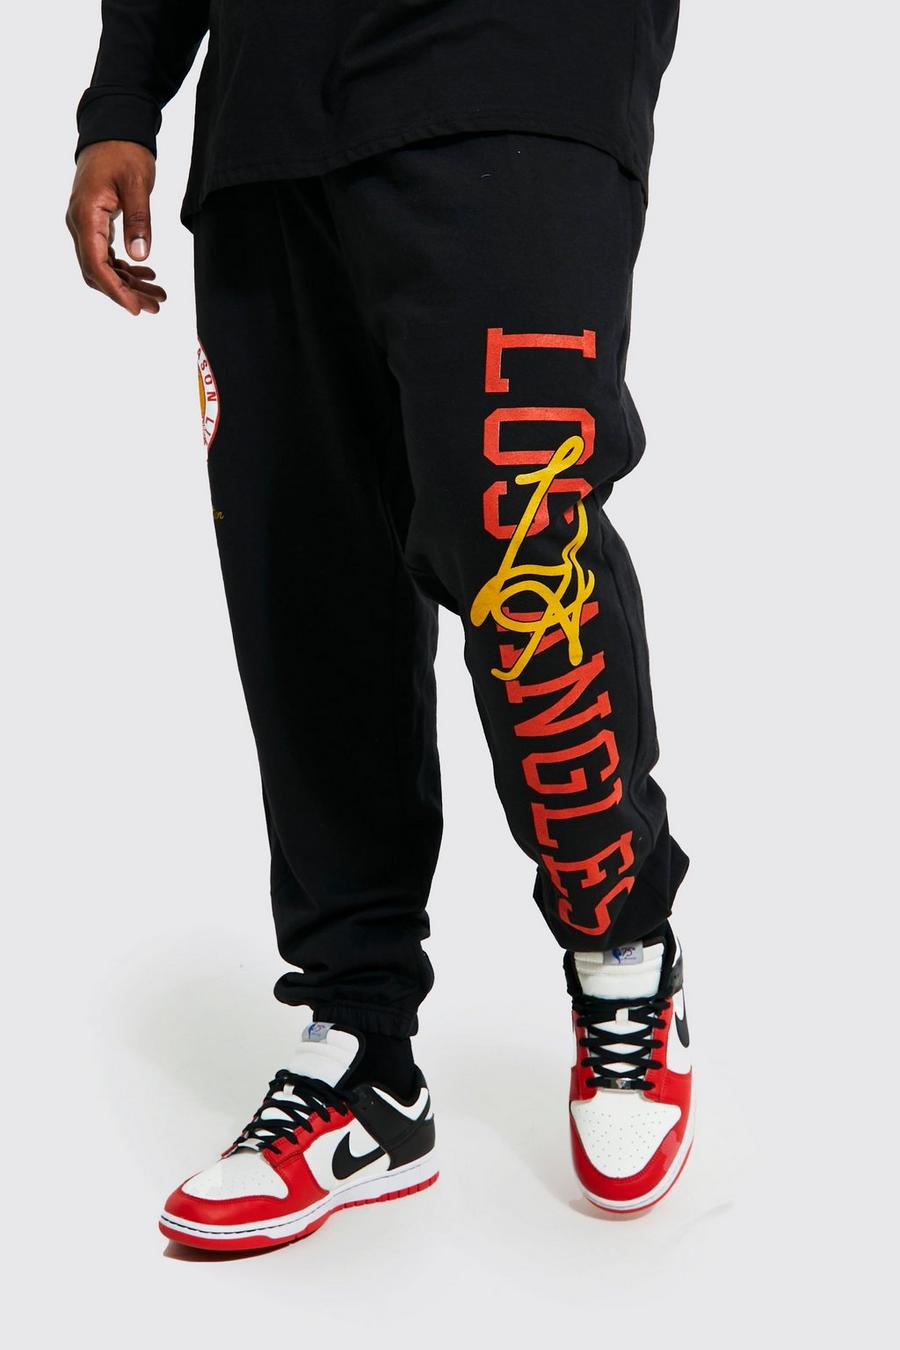 Pantalón deportivo Plus con estampado gráfico universitario de Los Angeles, Black nero image number 1